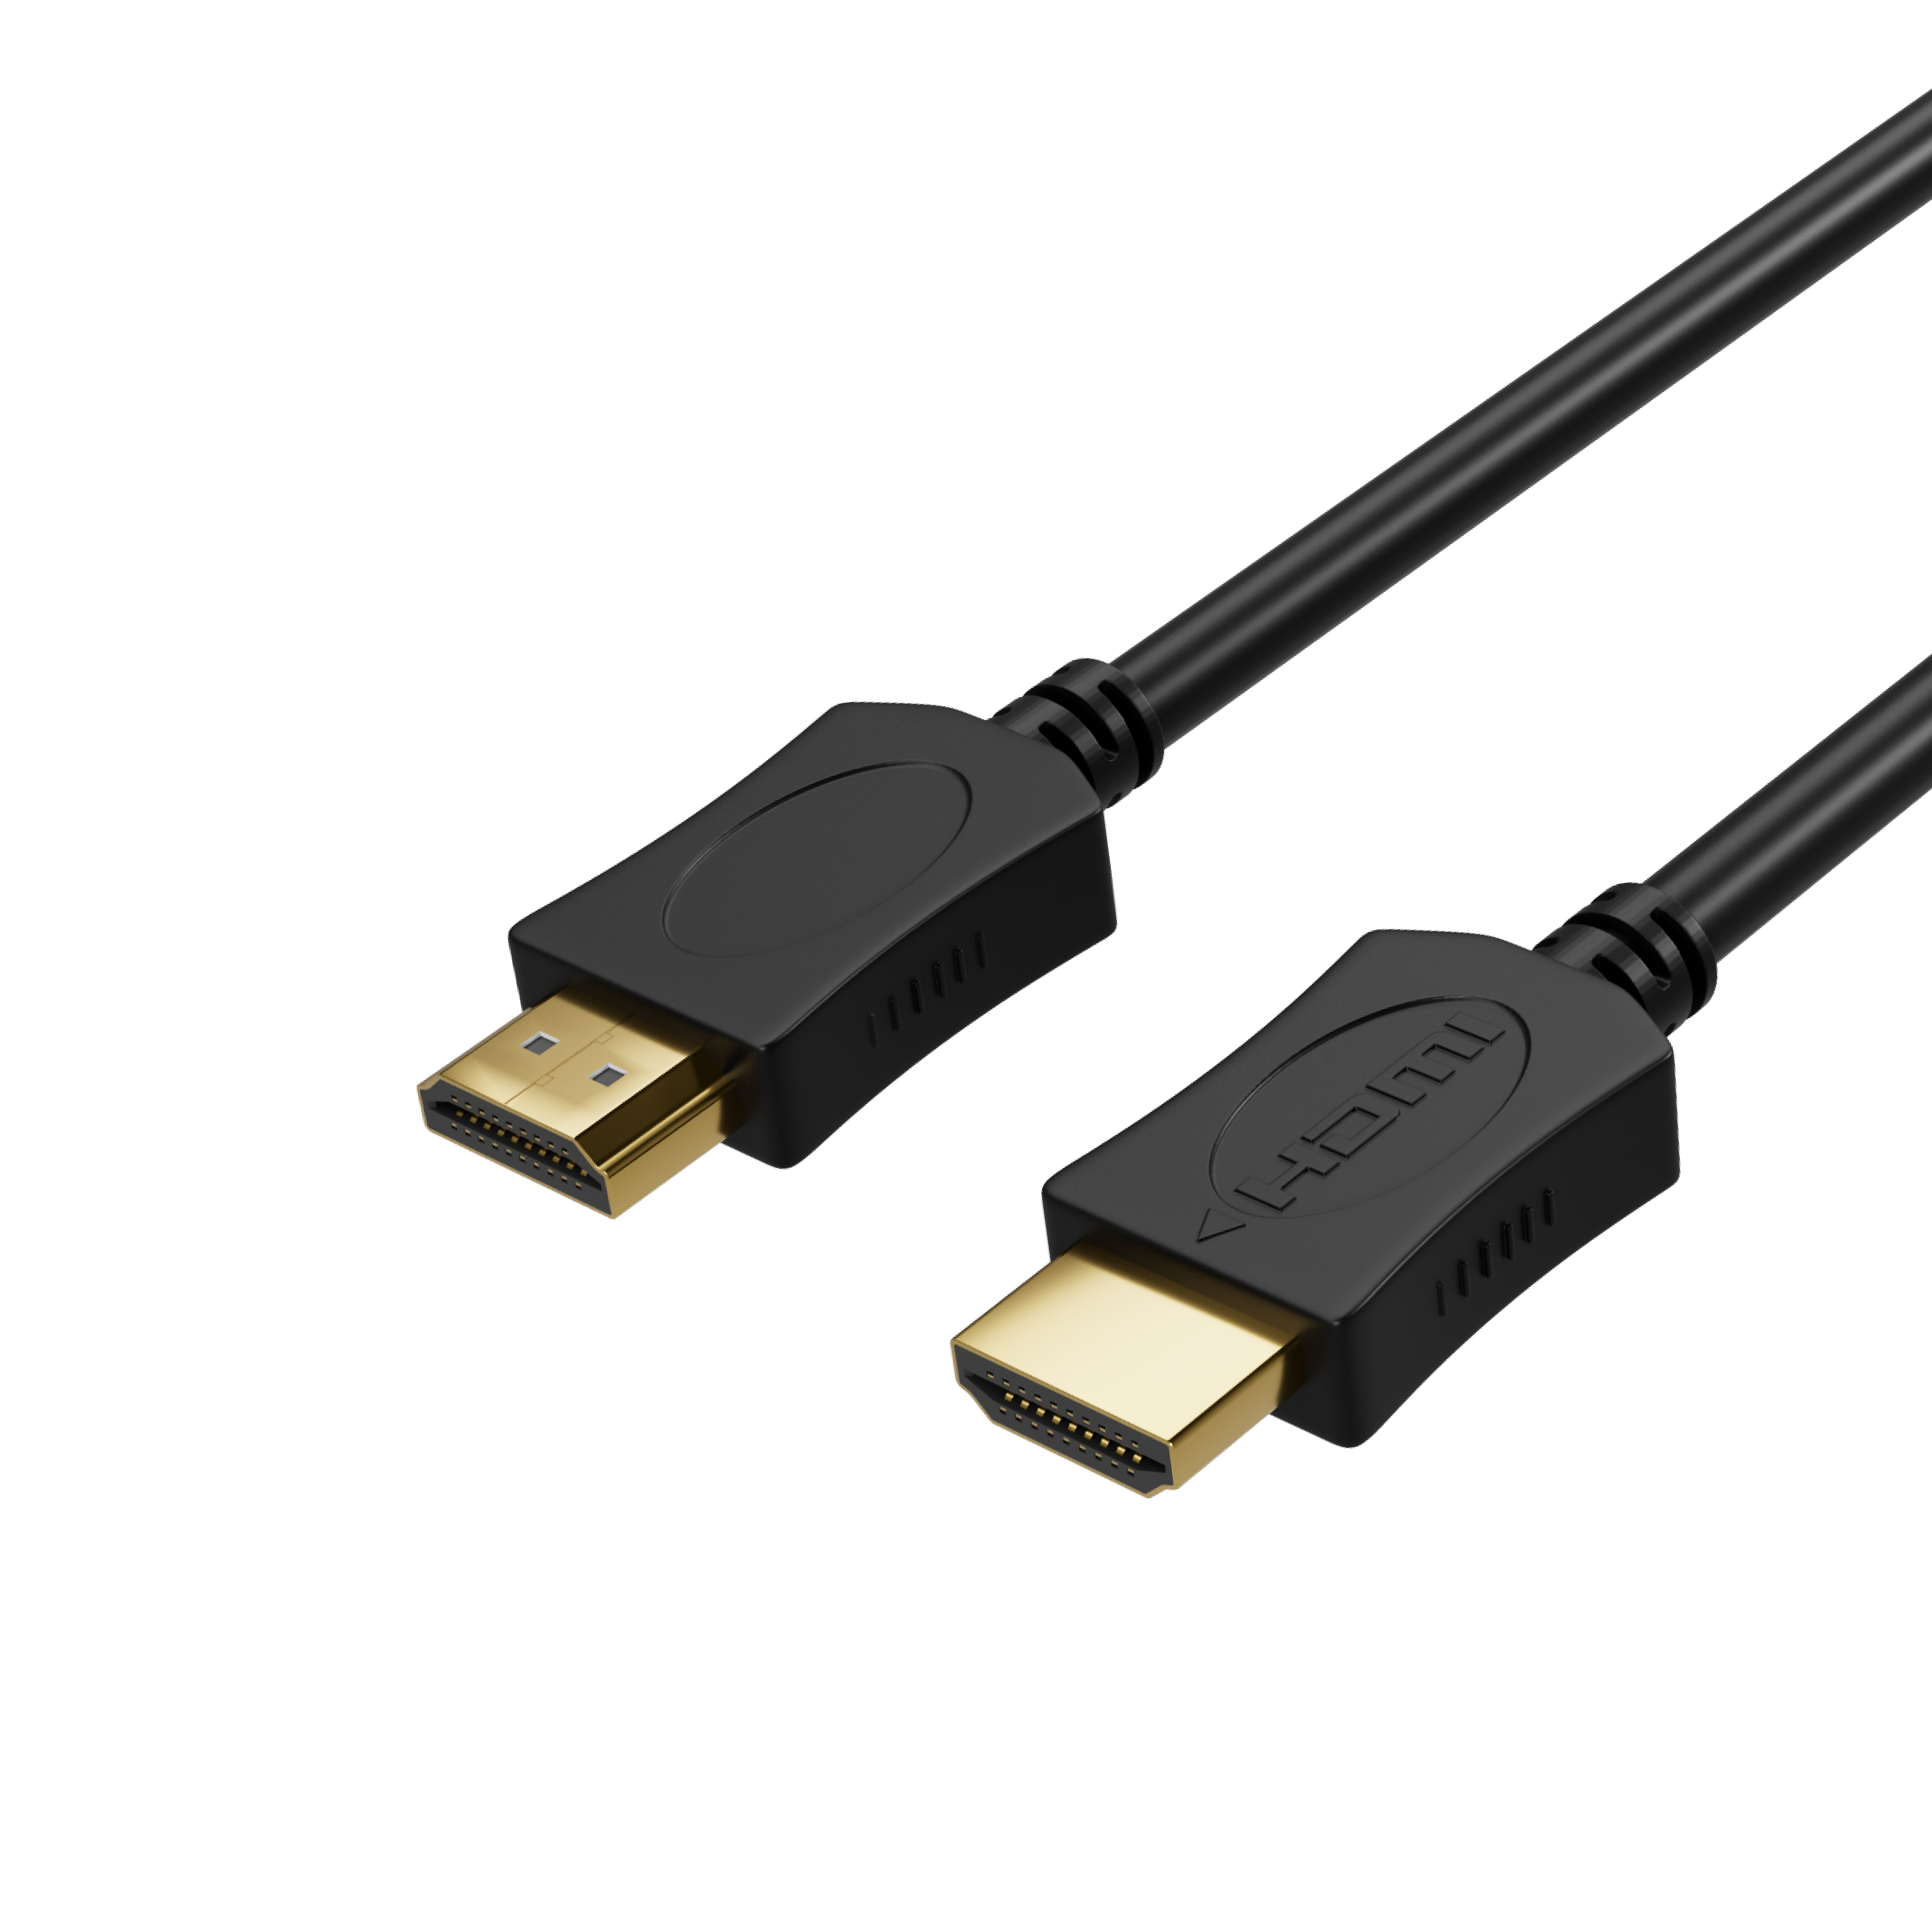 A-Stecker HDMI 1,5m OD6mm HDMI verg, Kabel HDMI A-Stecker KABELBUDE auf